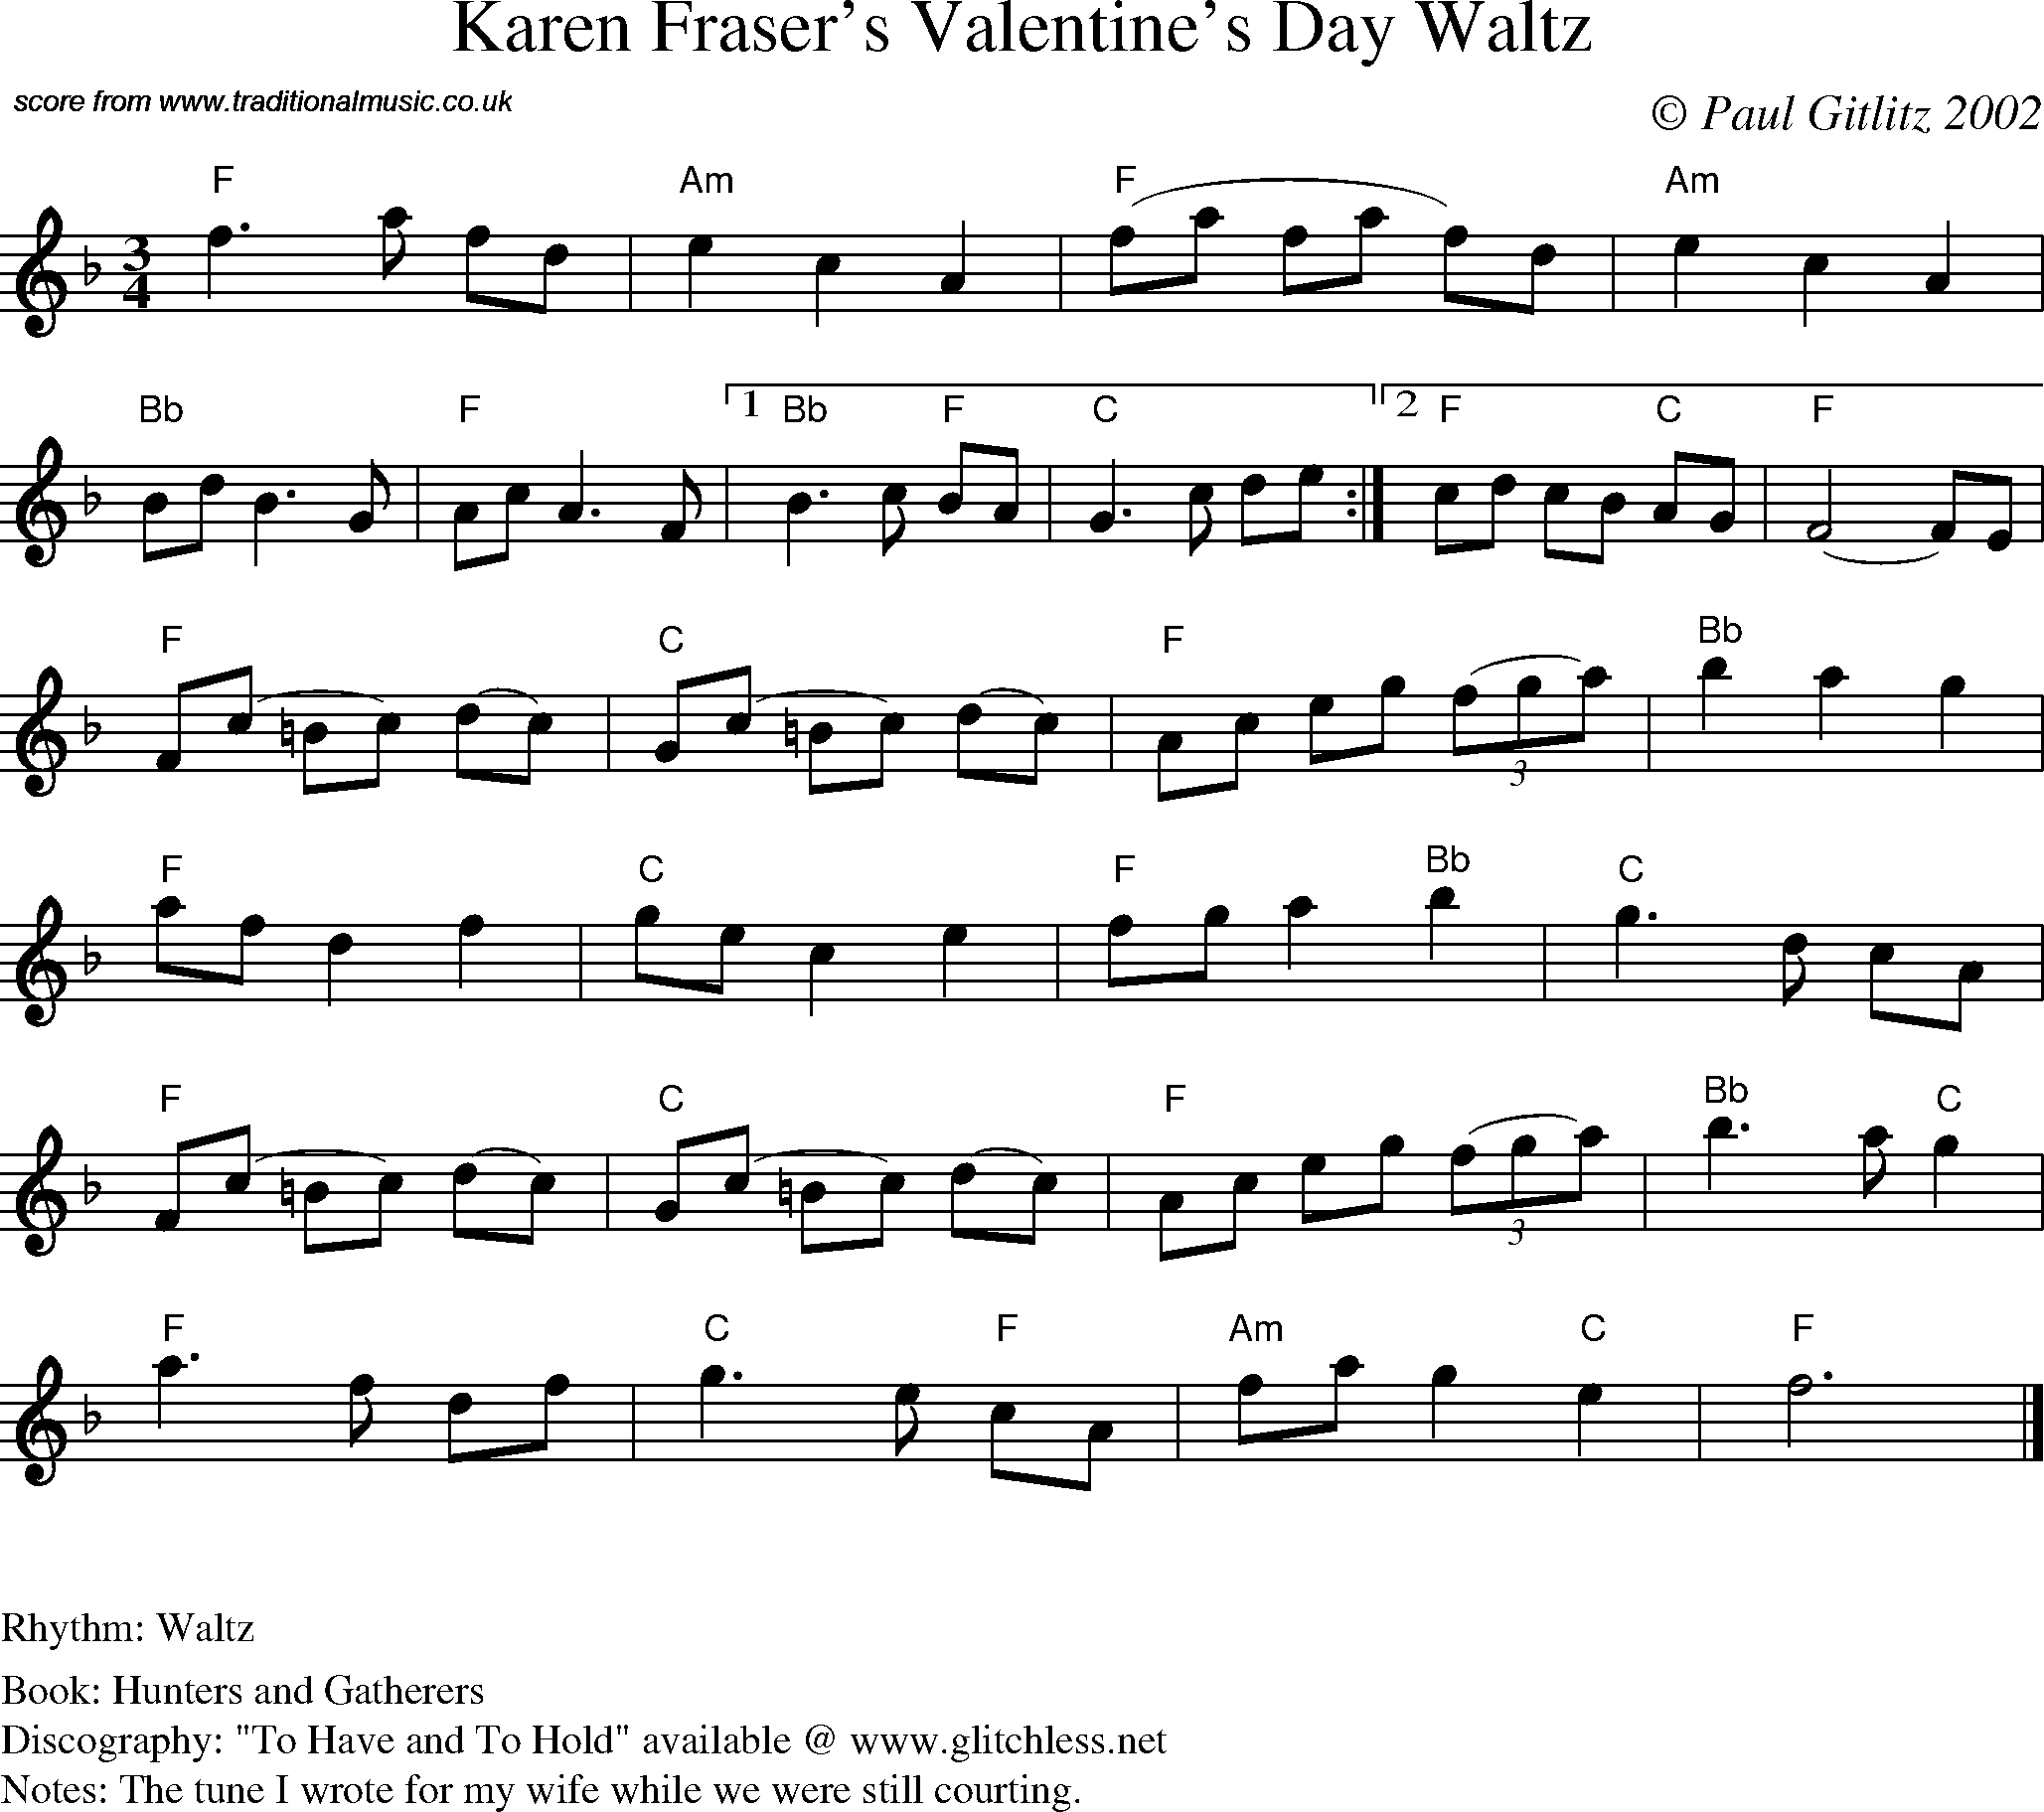 Sheet Music Score for Waltz - Karen Fraser's Valentine's Day Waltz